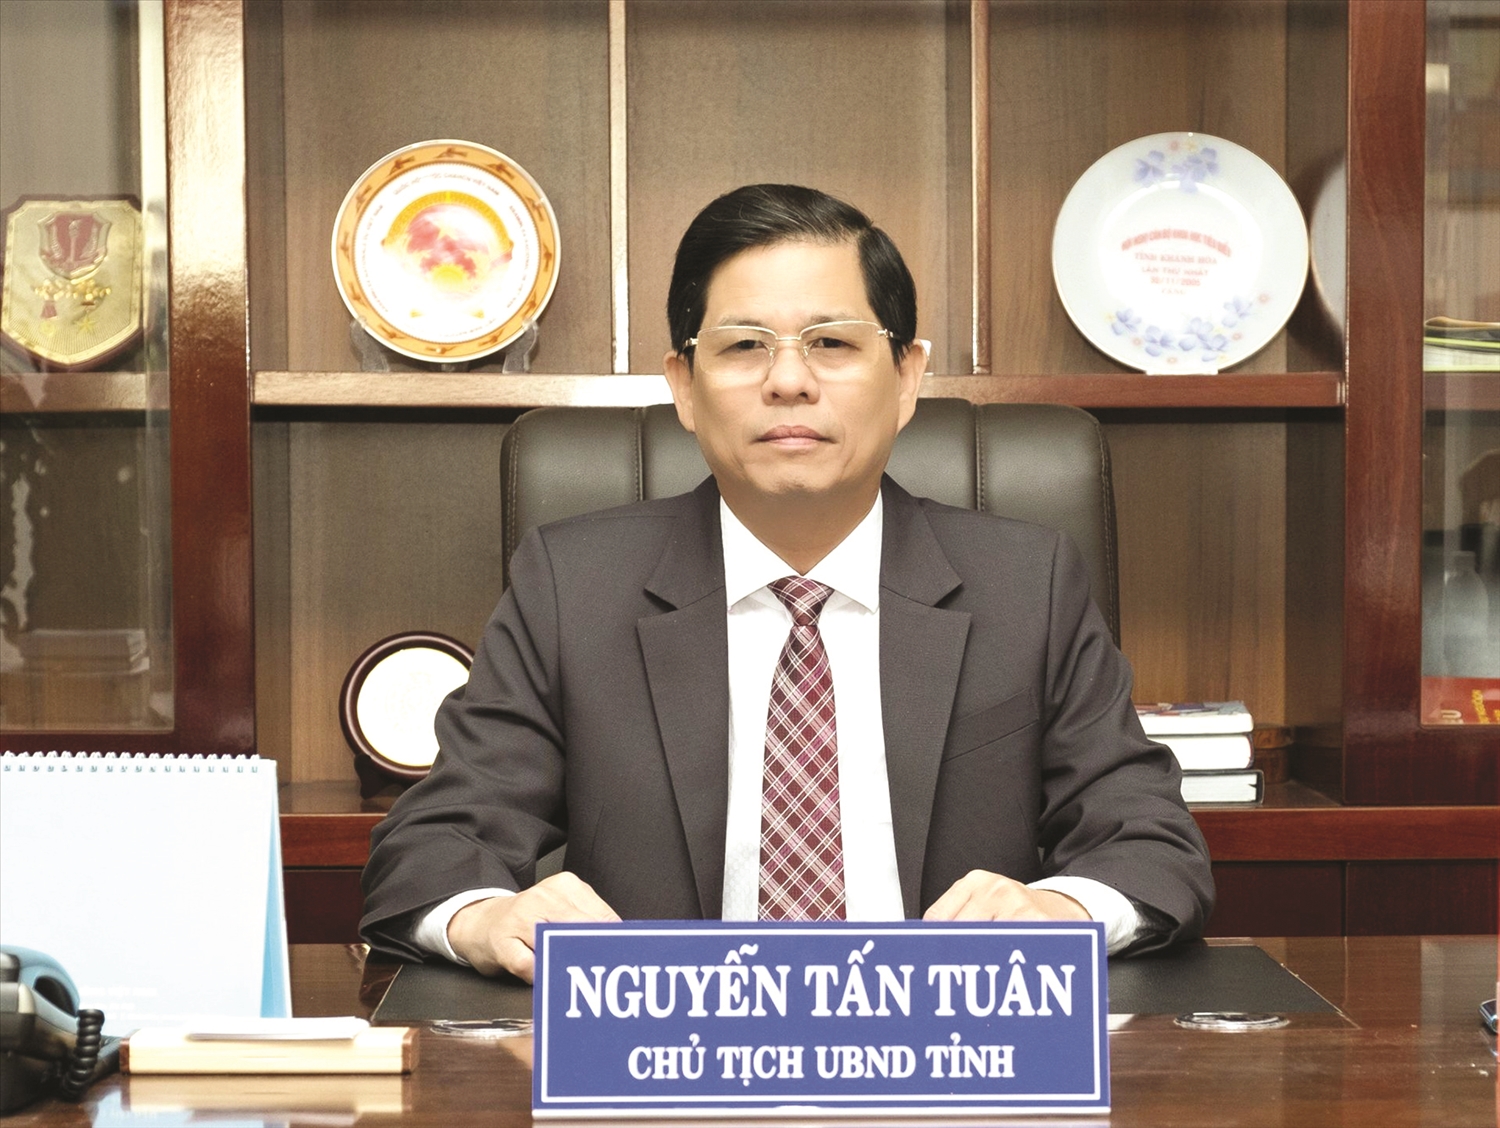 Ông Nguyễn Tấn Tuân, Chủ tịch UBND tỉnh Khánh Hòa.